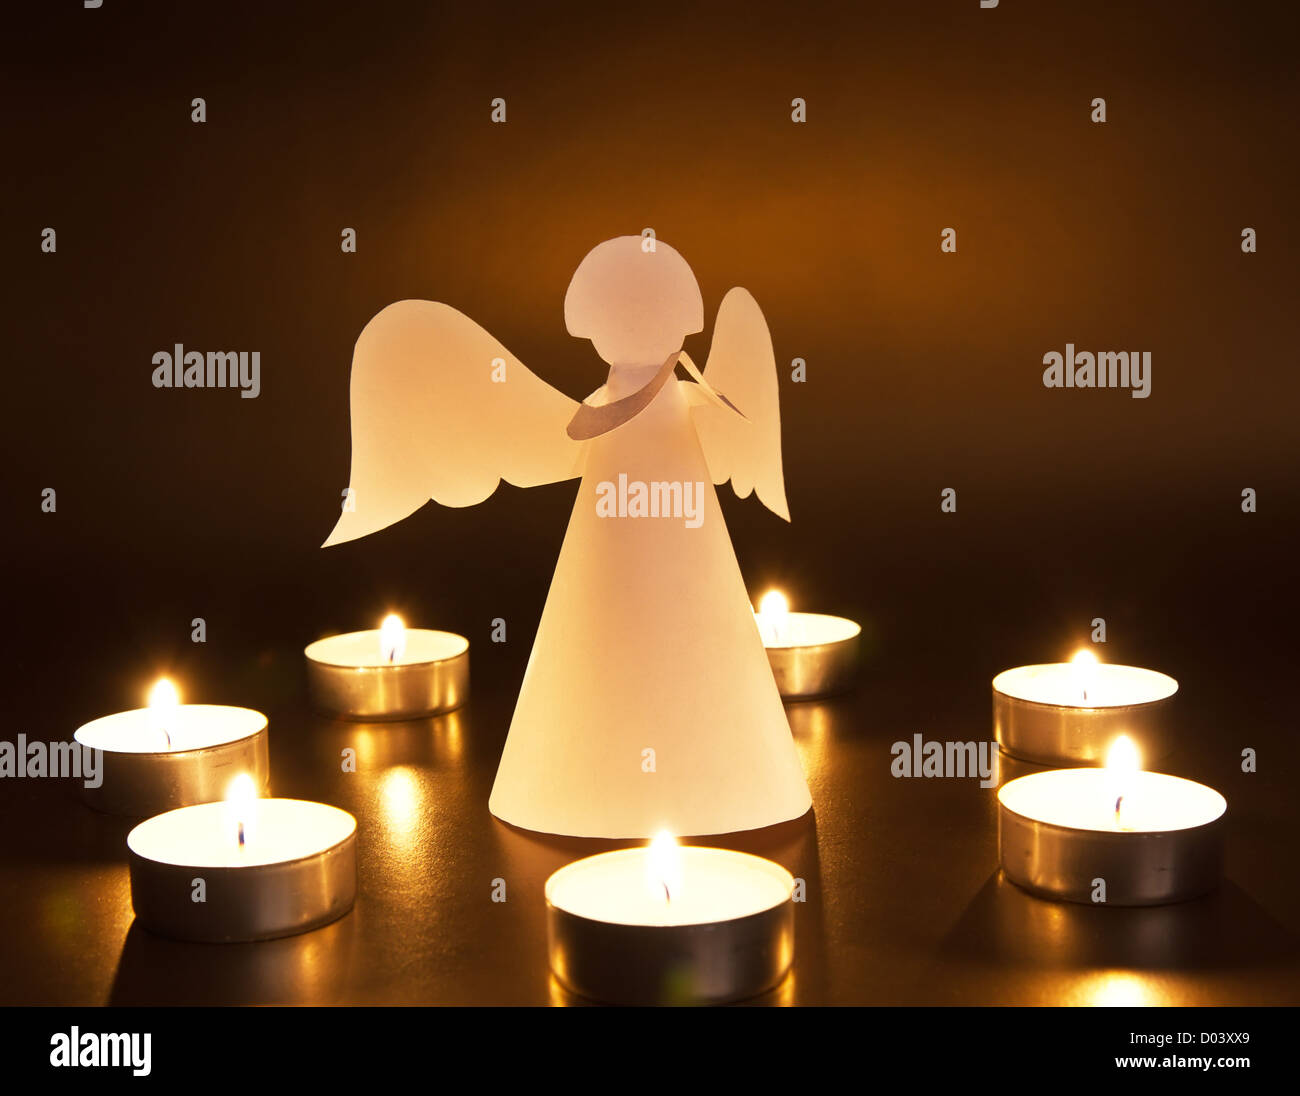 Weihnachtsengel mit Kerzen auf dunklem Hintergrund Stockfoto